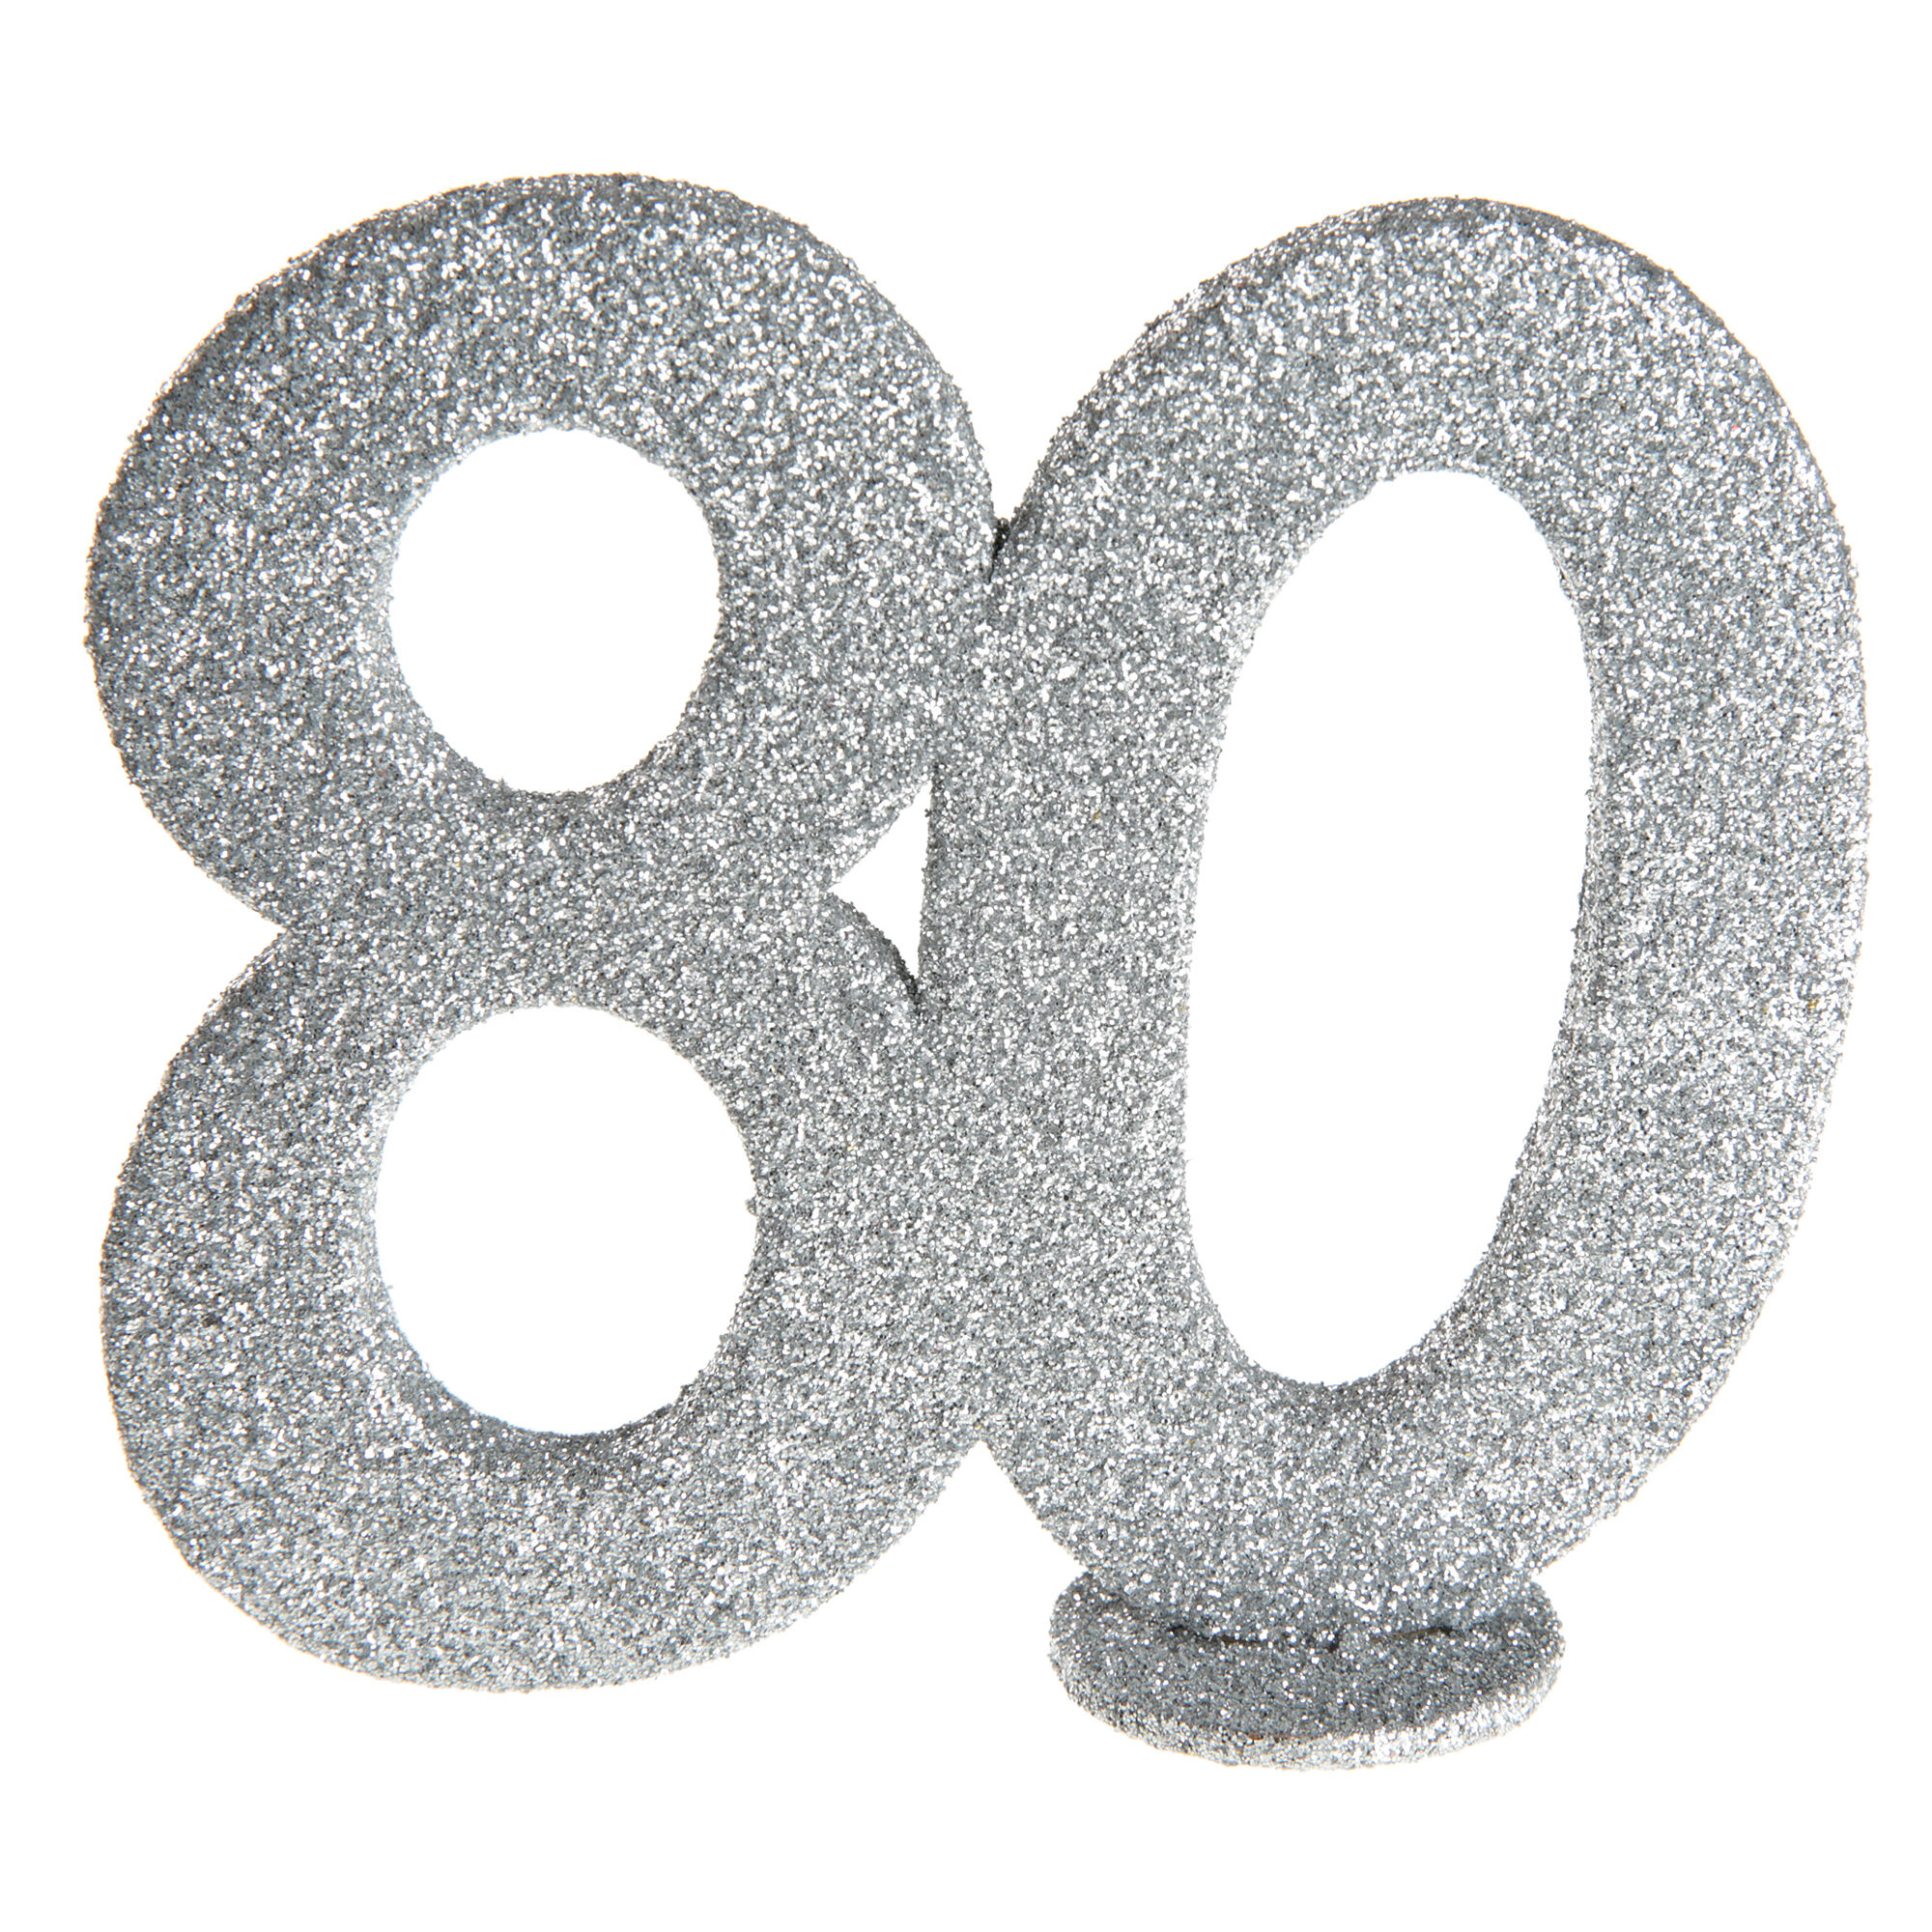 NEU Aufsteller Geburtstags-Zahl 80, glitter-silber, ca. 10cm